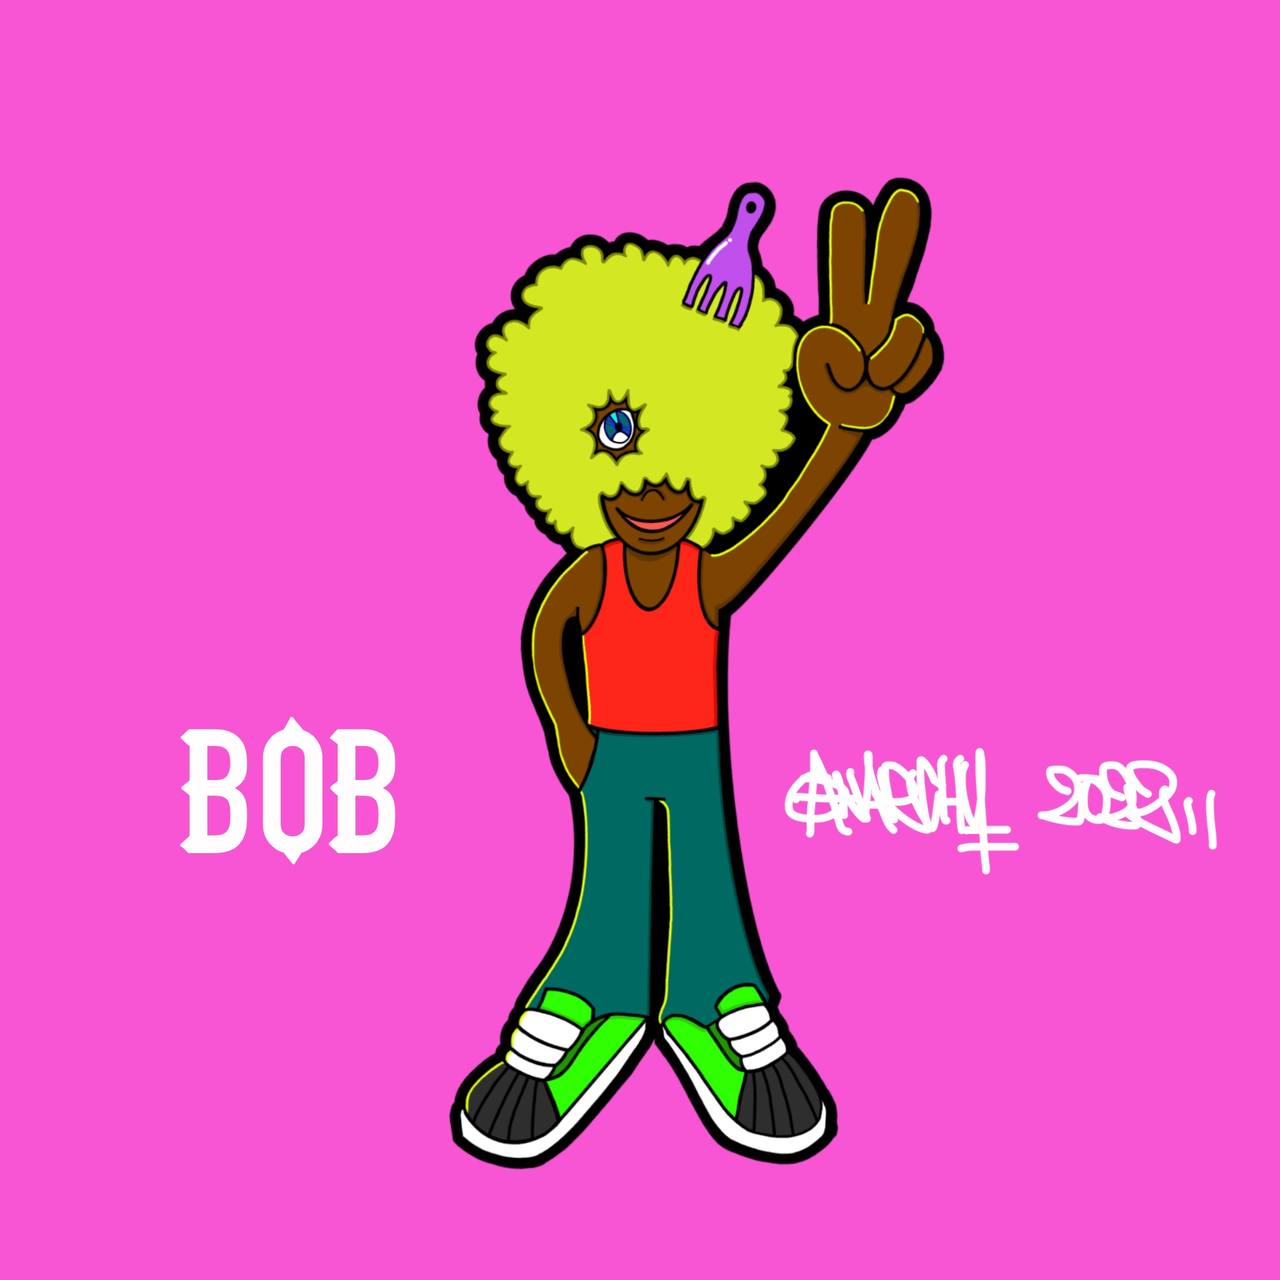  BOB(VALUE 3000NXD)